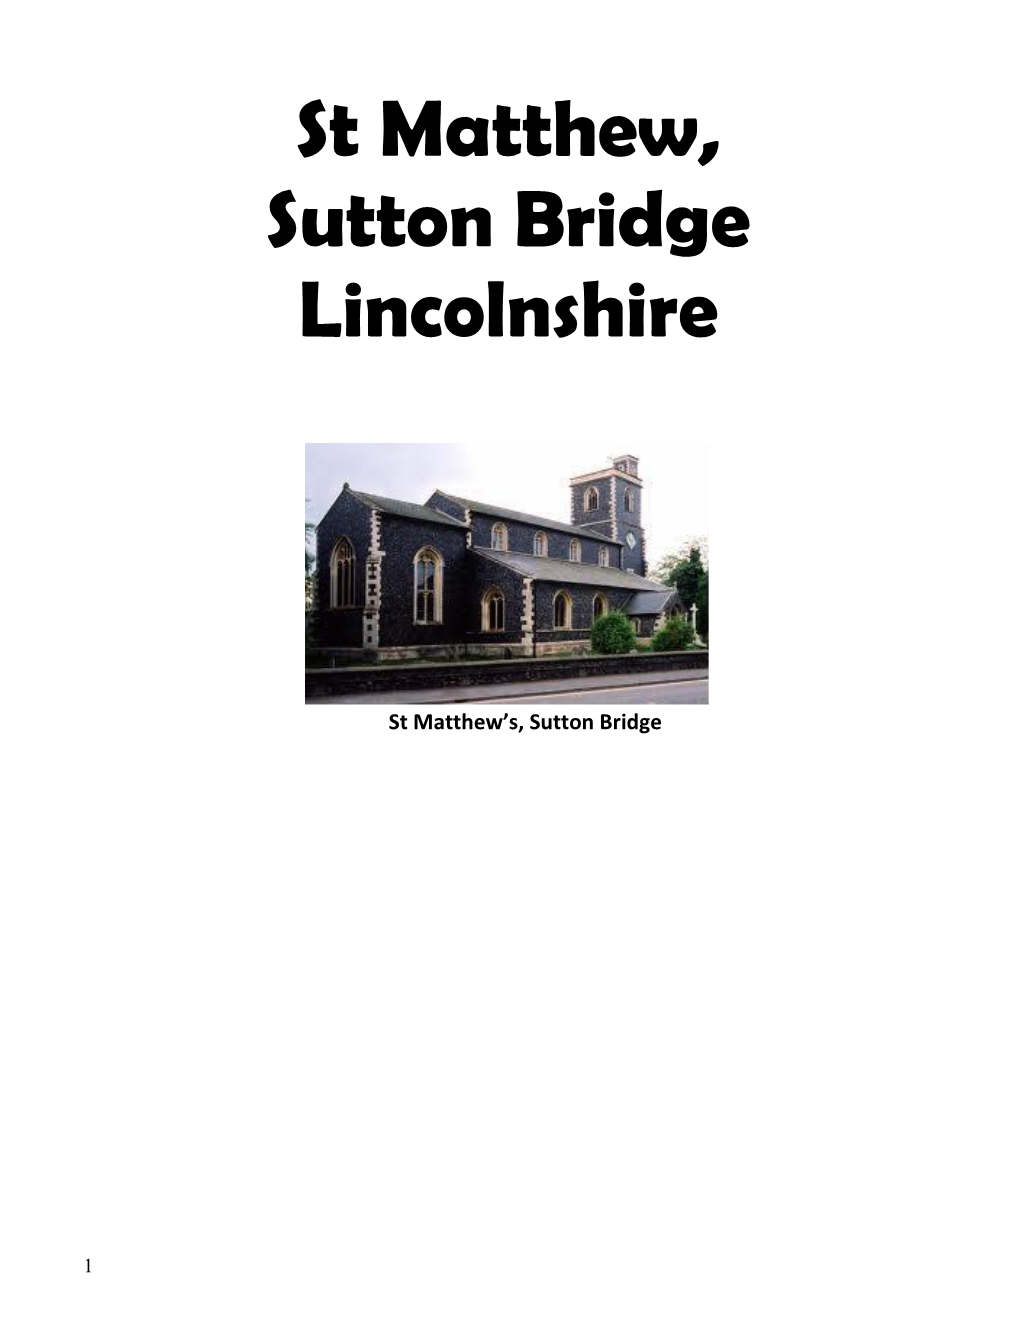 St Matthew, Sutton Bridge Lincolnshire